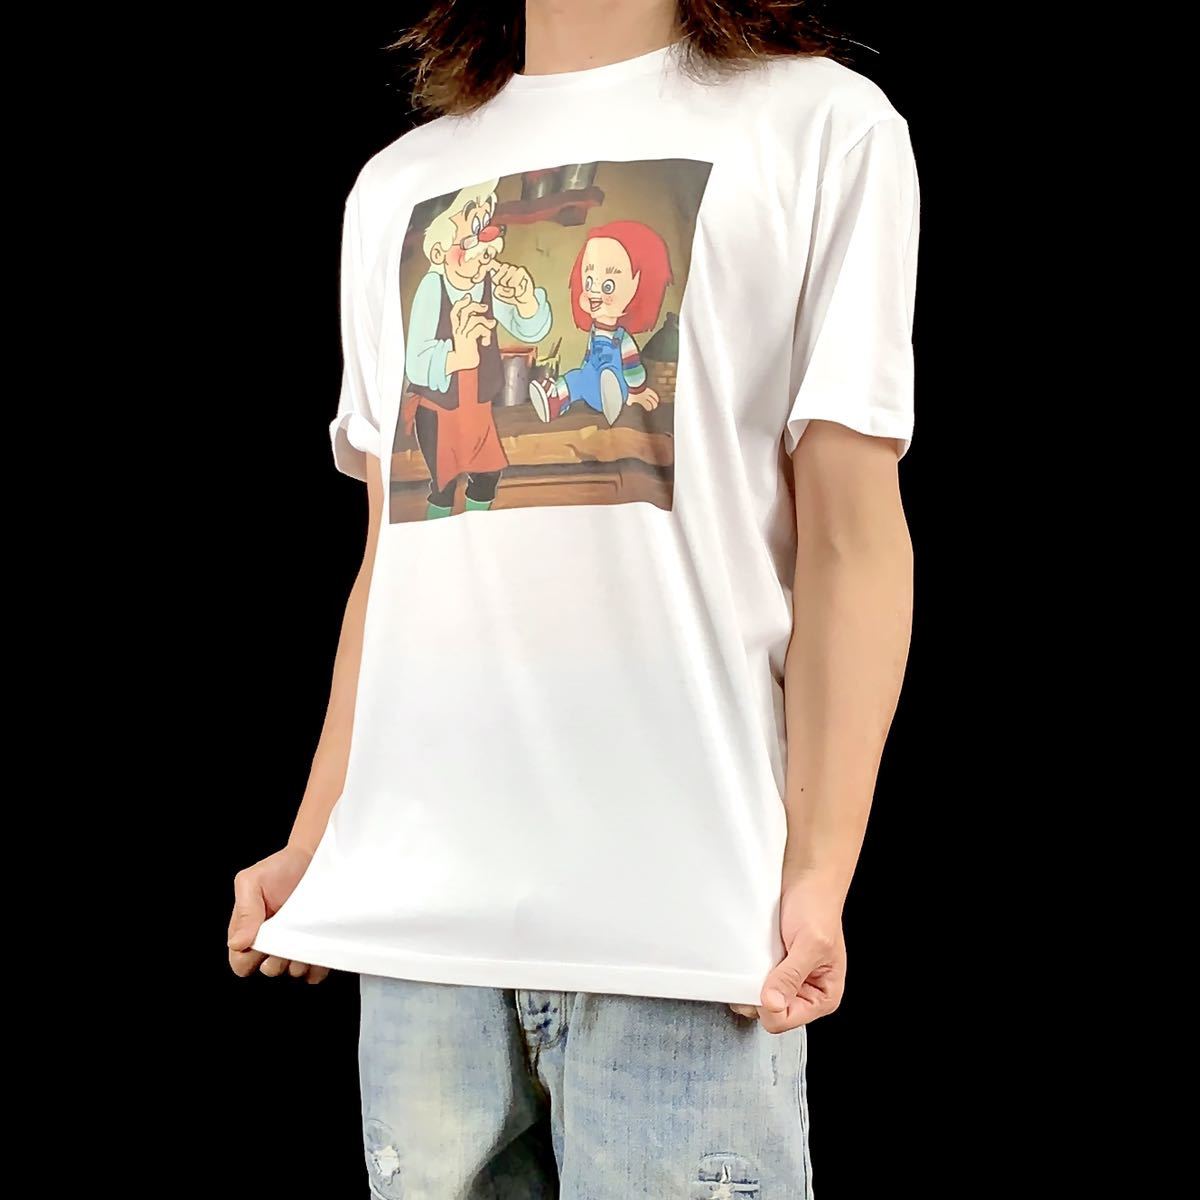 (税込) S Tシャツ グッドガイ人形 チャッキー チャイルドプレイ ゼペット ピノキオ 新品 M 可 パーカー ロンT XXL~5XL オーバーサイズ ビッグ XL L サブカルチャー